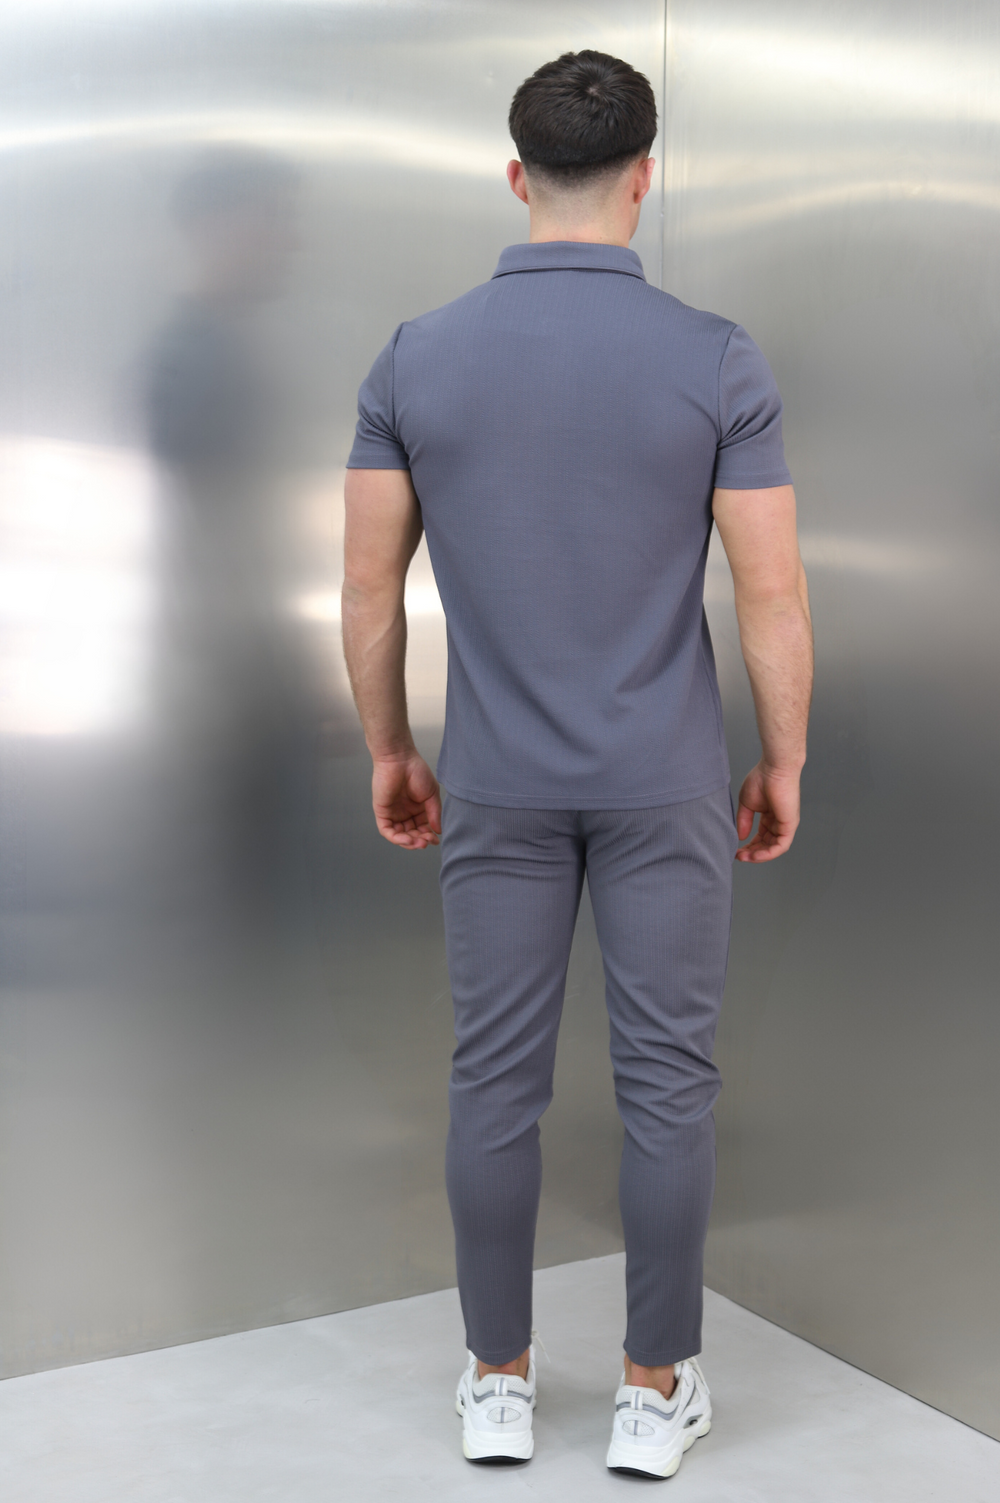 Capo TWIST Polo Shirt - Dark Grey